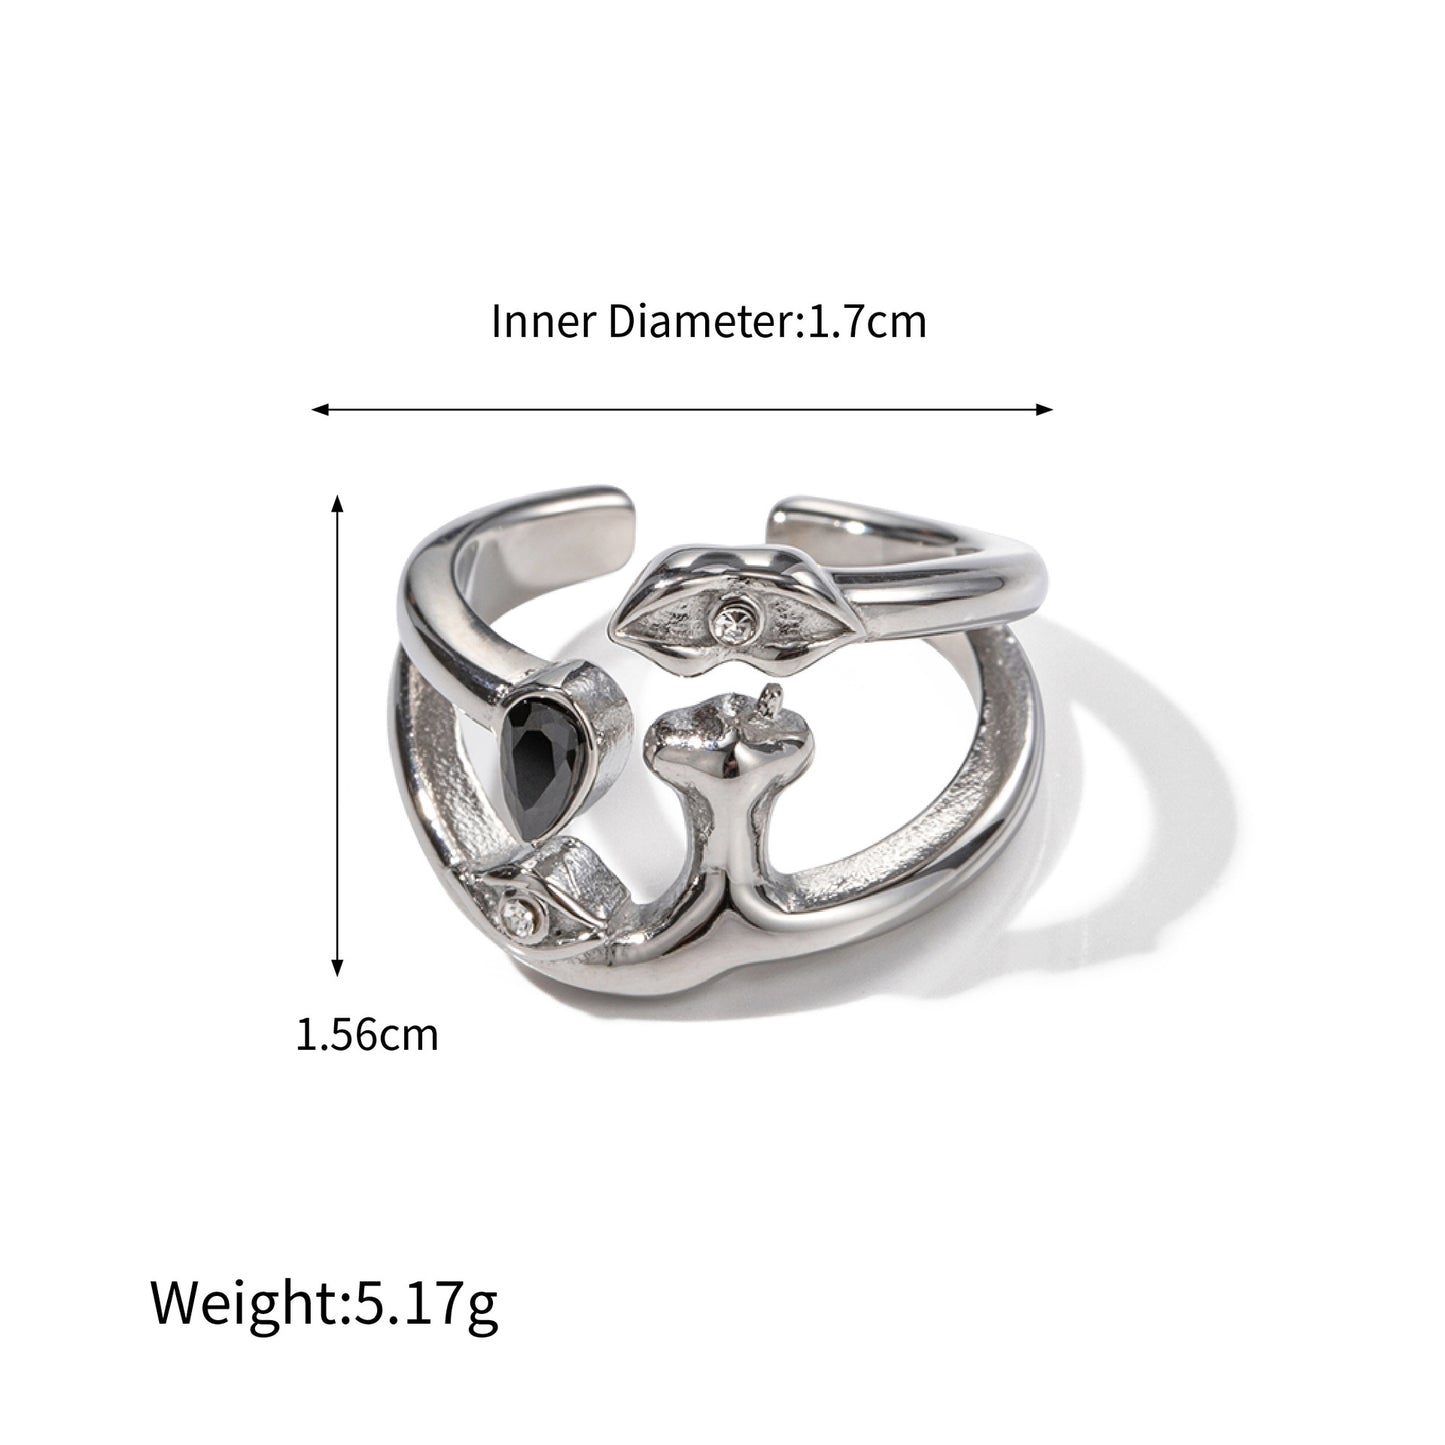 18K gold exquisite simple geometric inlaid gemstone design ring